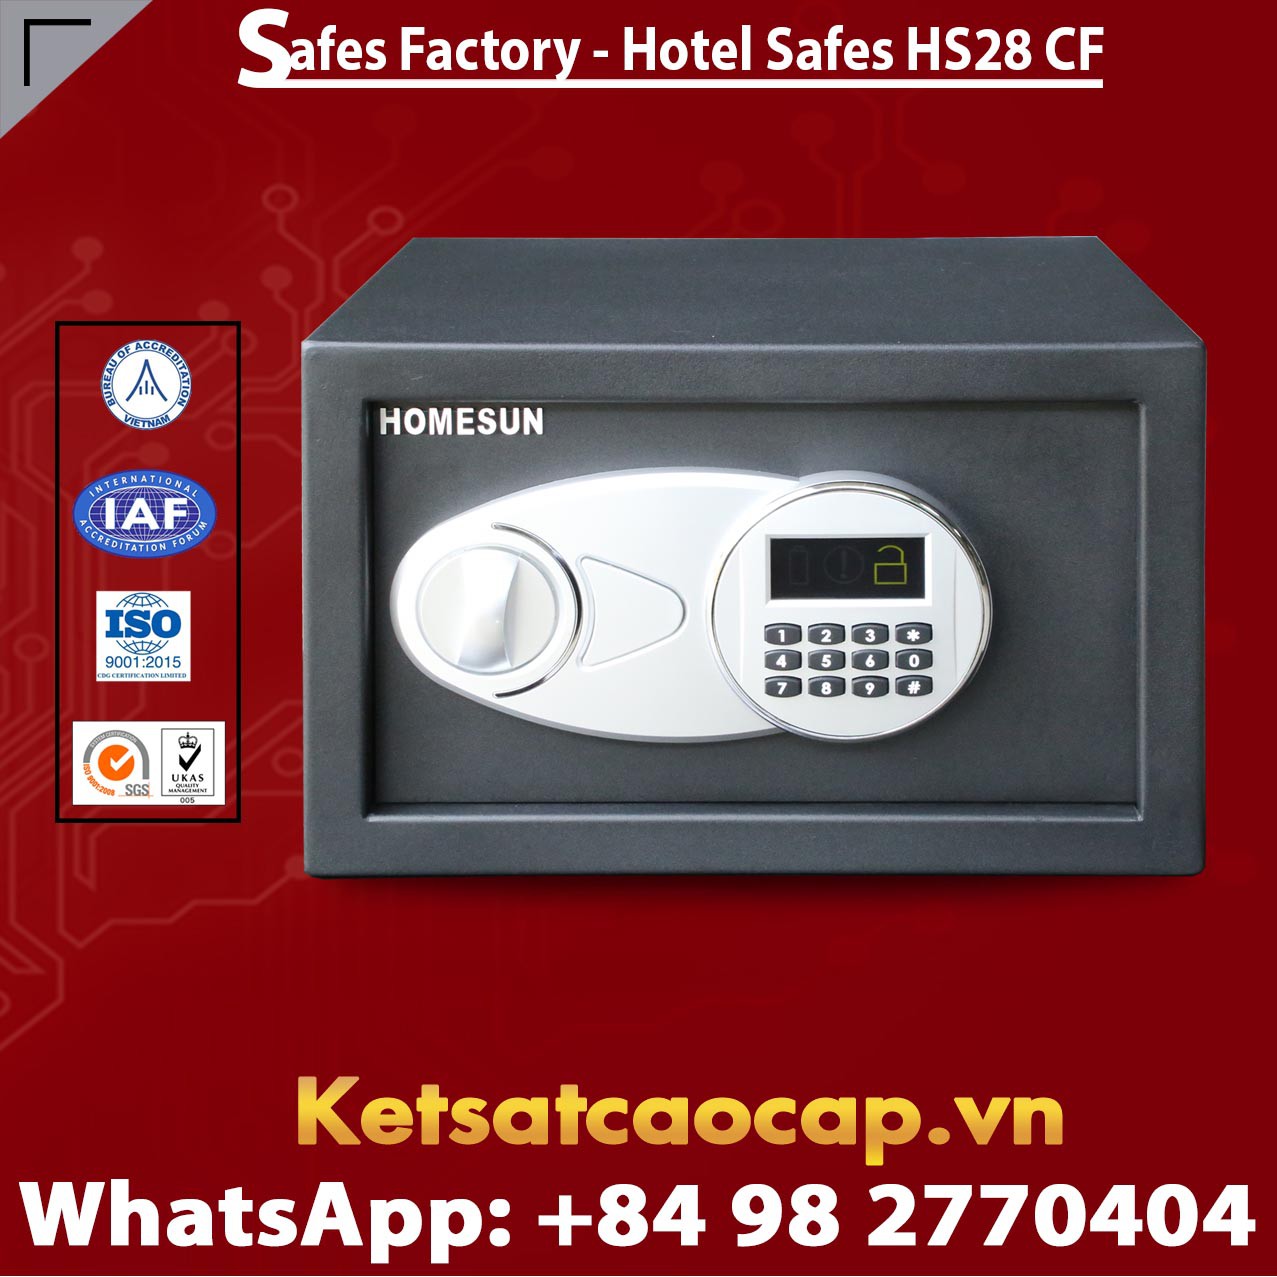 Best Sellers In Hotel Safes HOMESUN HS28 CF